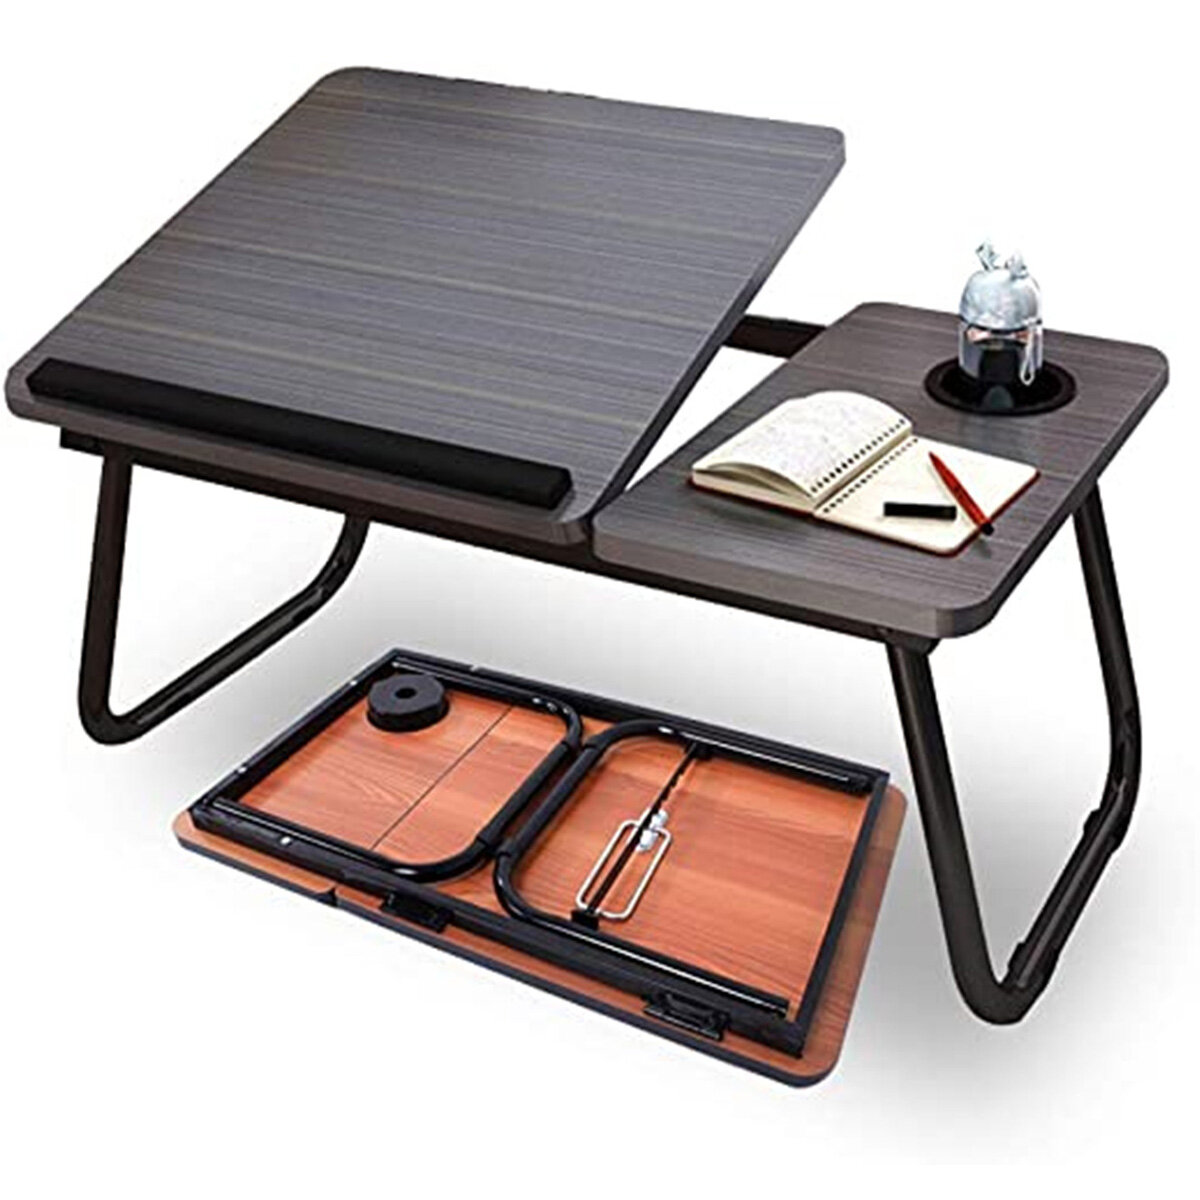 Összecsukható állvány asztal az ágyon, emelhető laptop asztal, stabil csúszásmentes belső ágy dormitory asztal